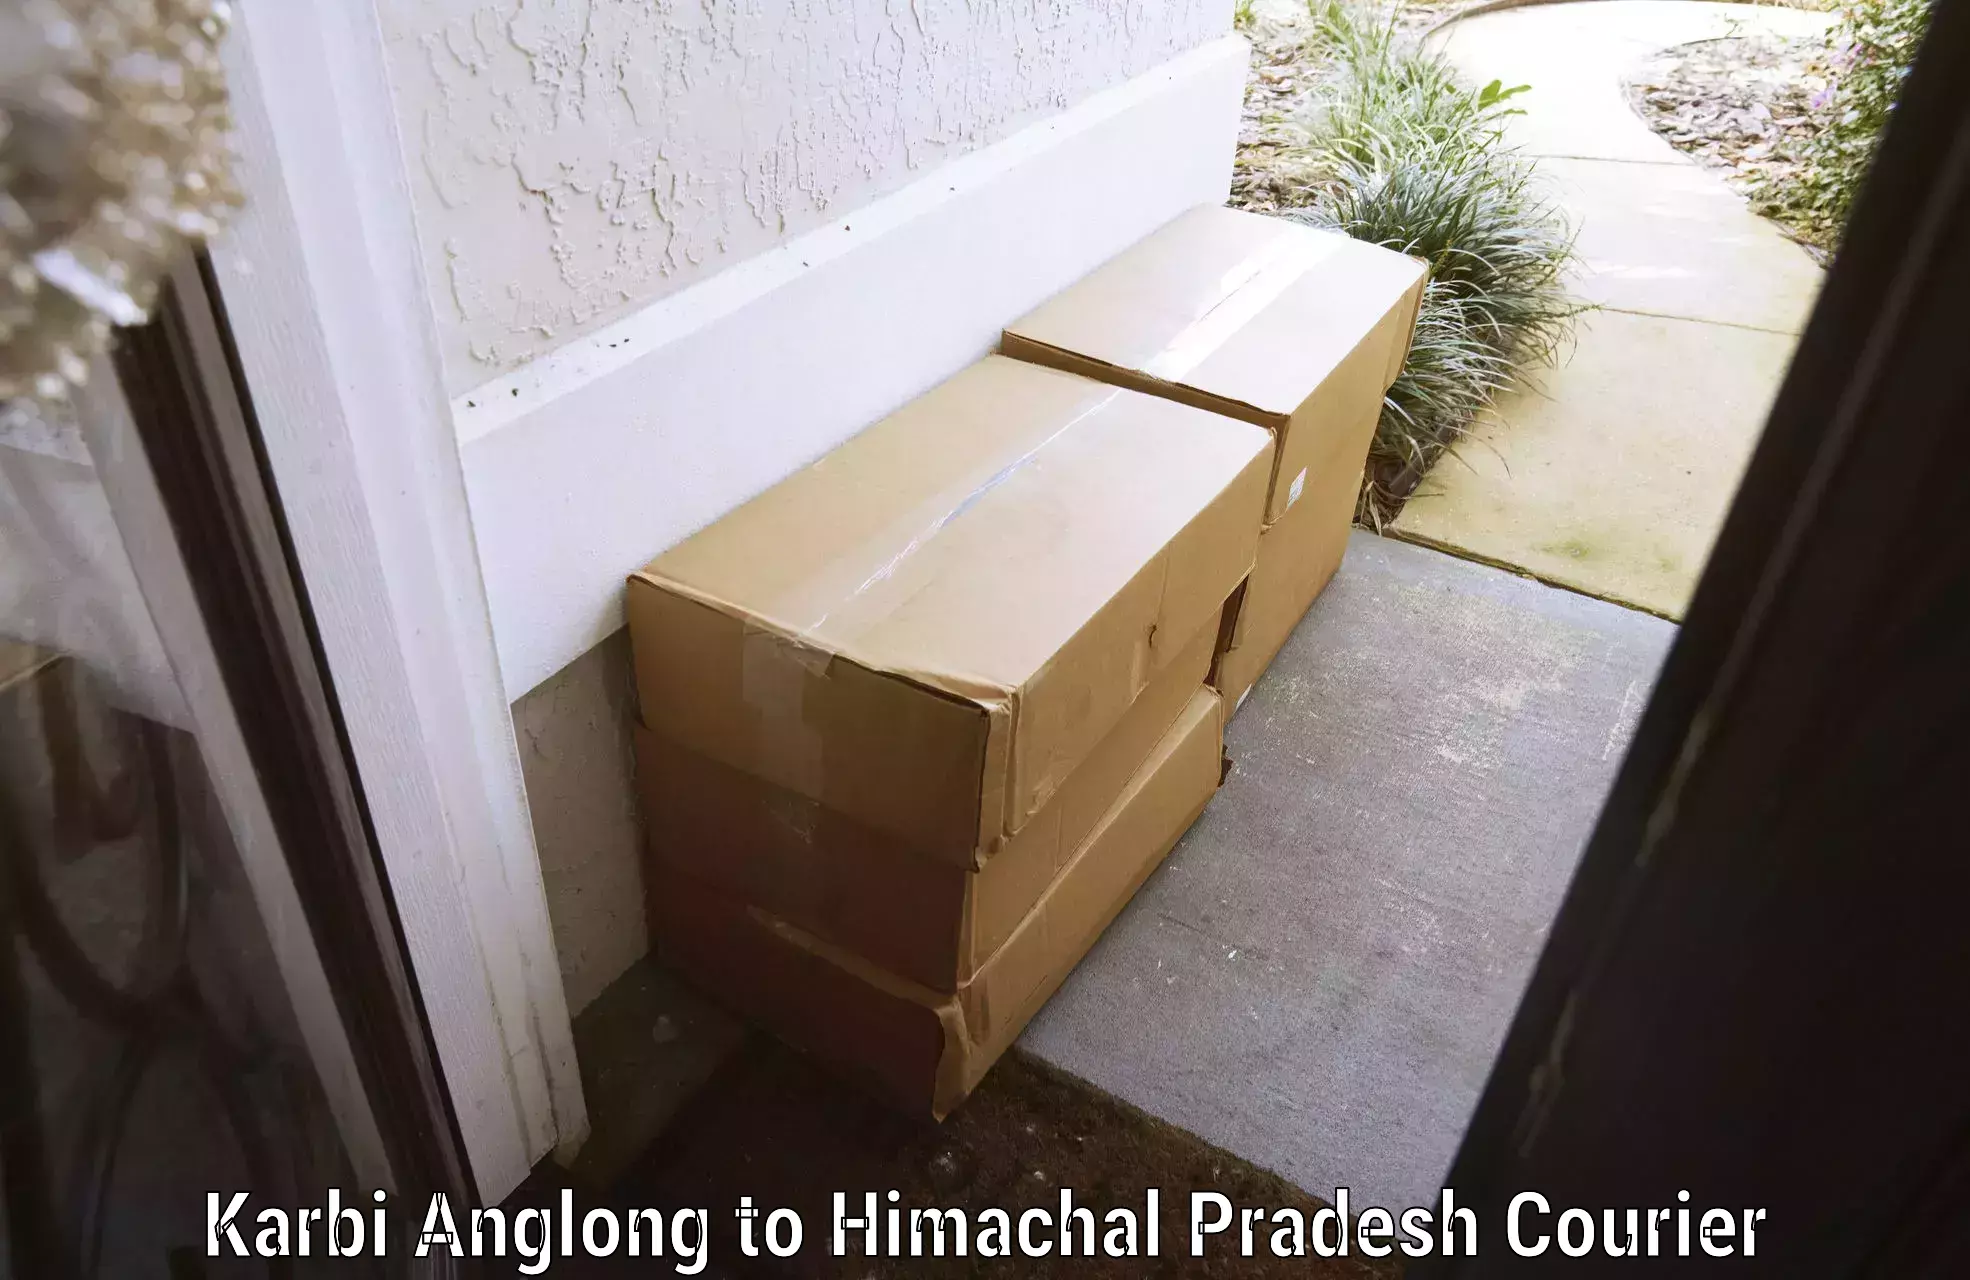 Luggage shipment strategy Karbi Anglong to Himachal Pradesh